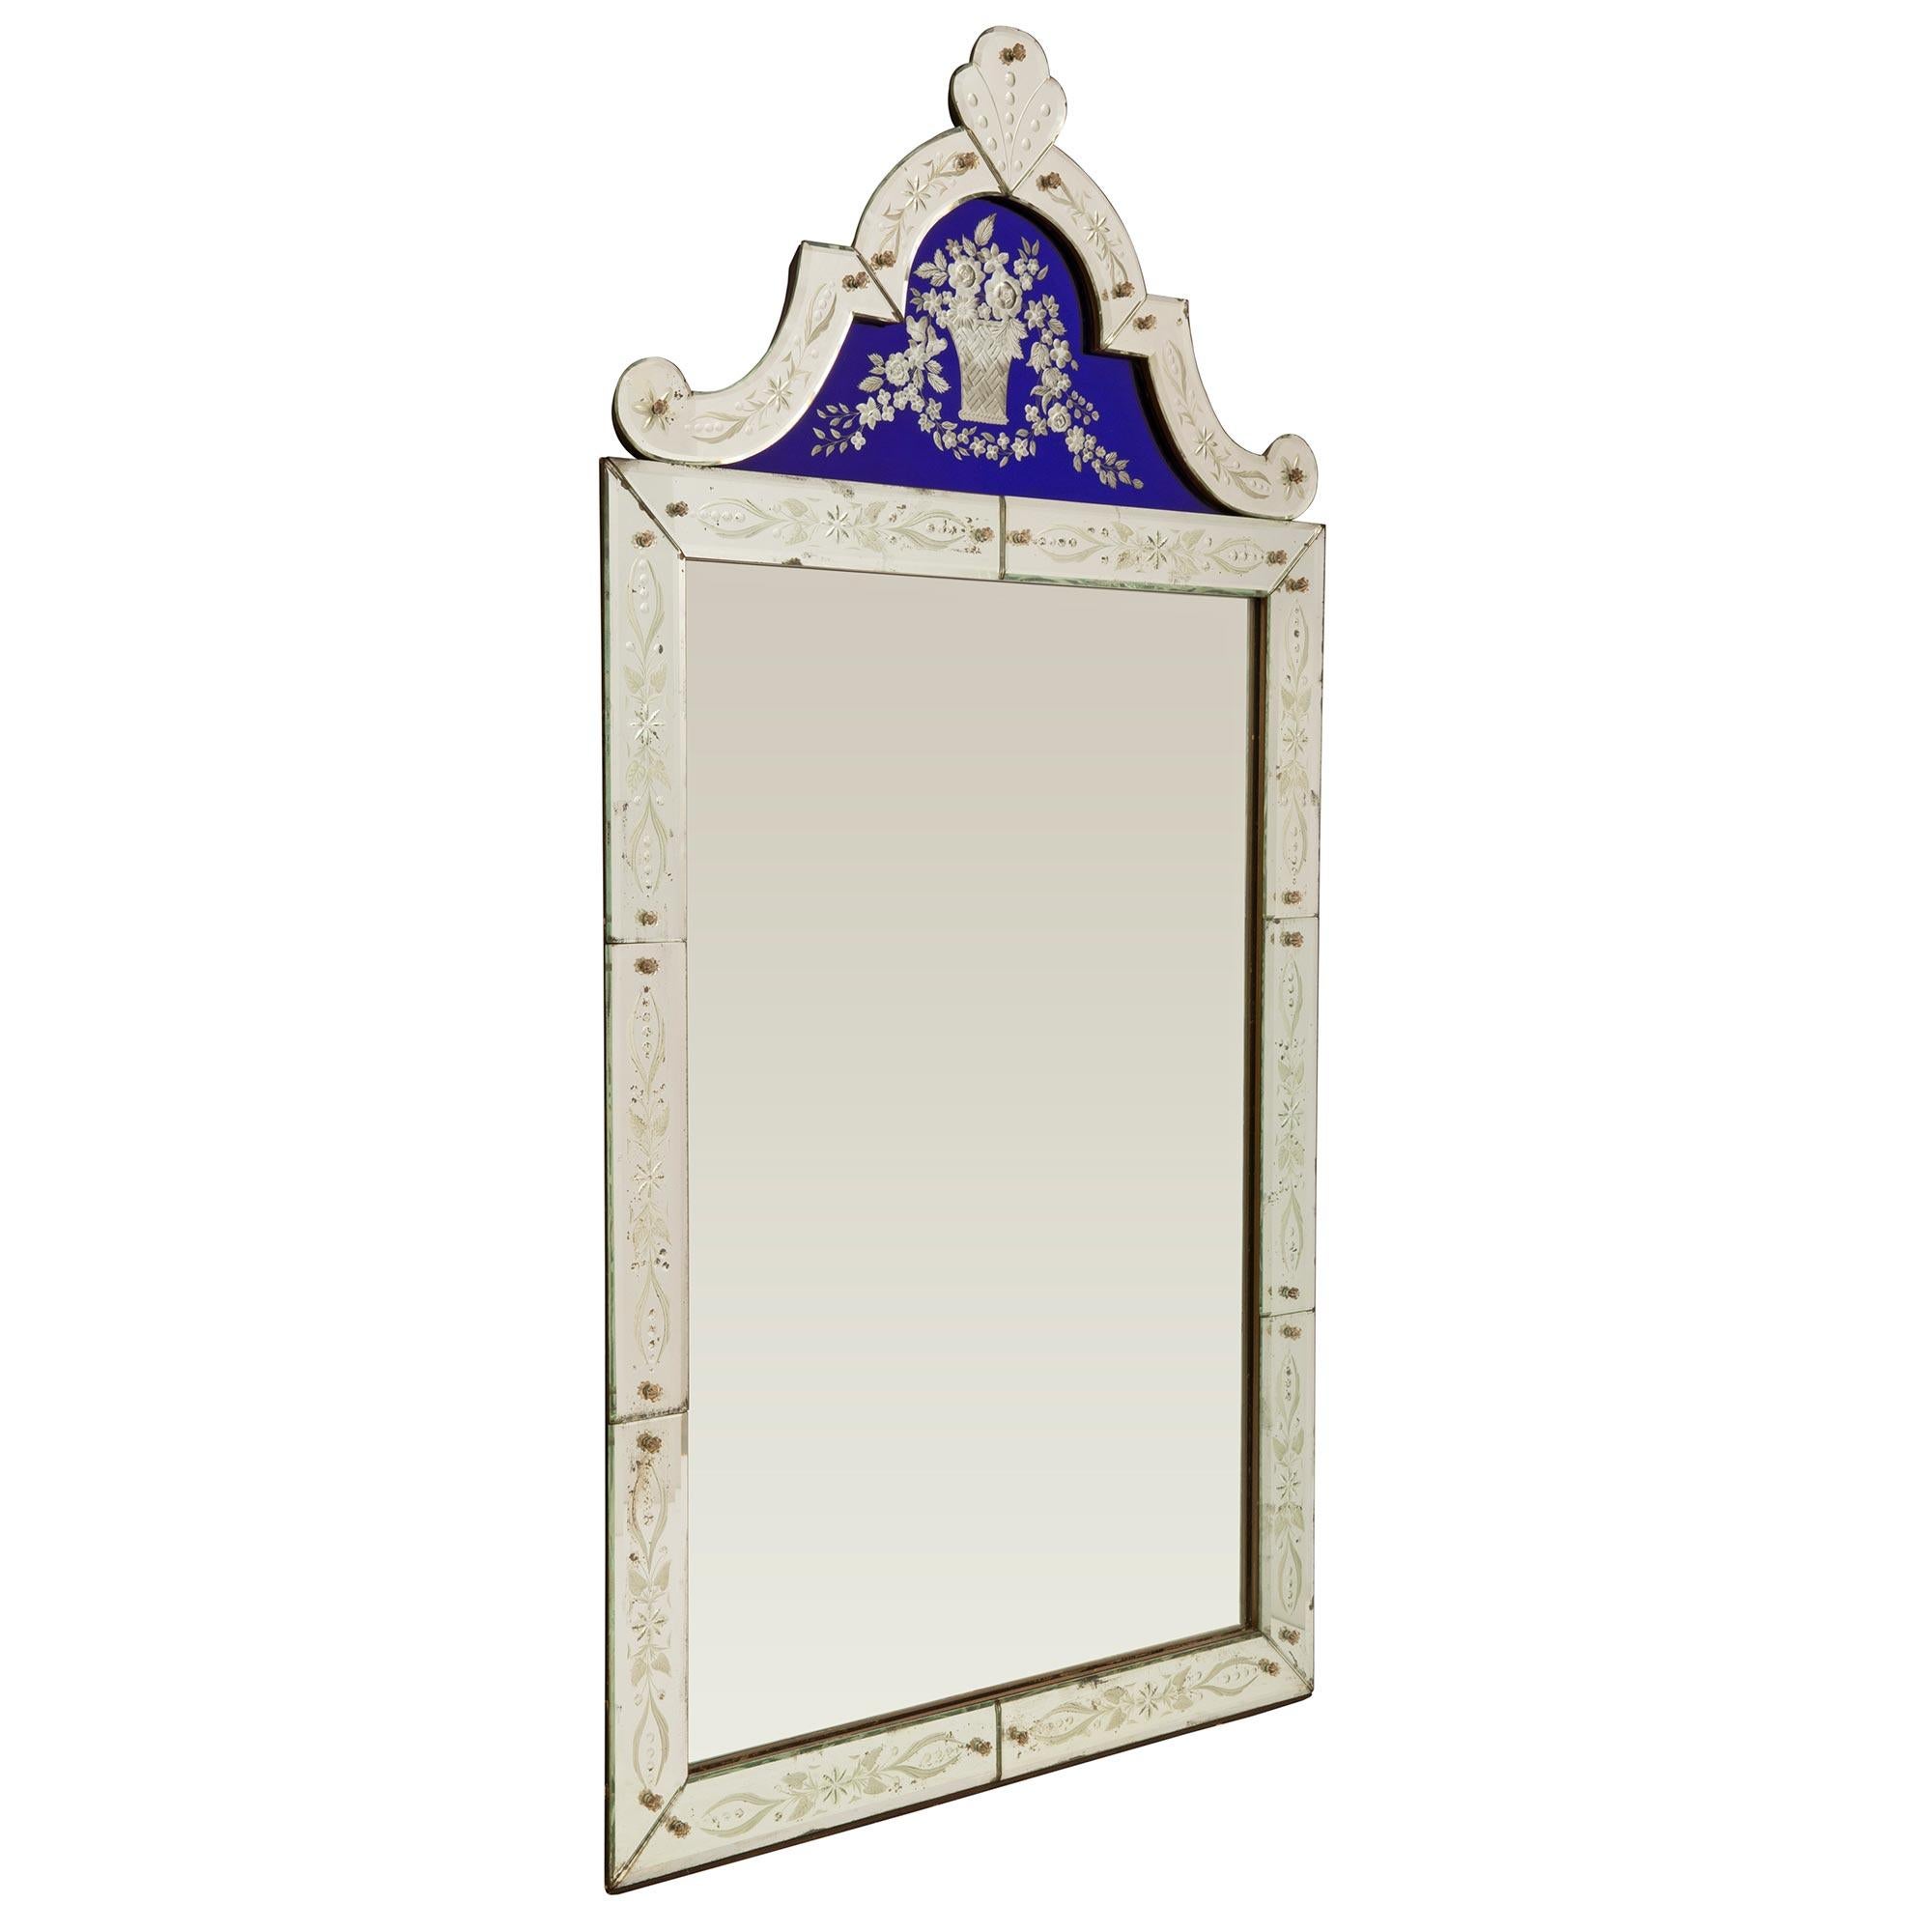 Ein wunderschöner und äußerst dekorativer italienischer venezianischer Spiegel aus der Jahrhundertwende. Der schöne Spiegel behält alle seine ursprüngliche Spiegelplatten in der gesamten mit dem zentralen Spiegel in schönen geätzten Spiegelplatten